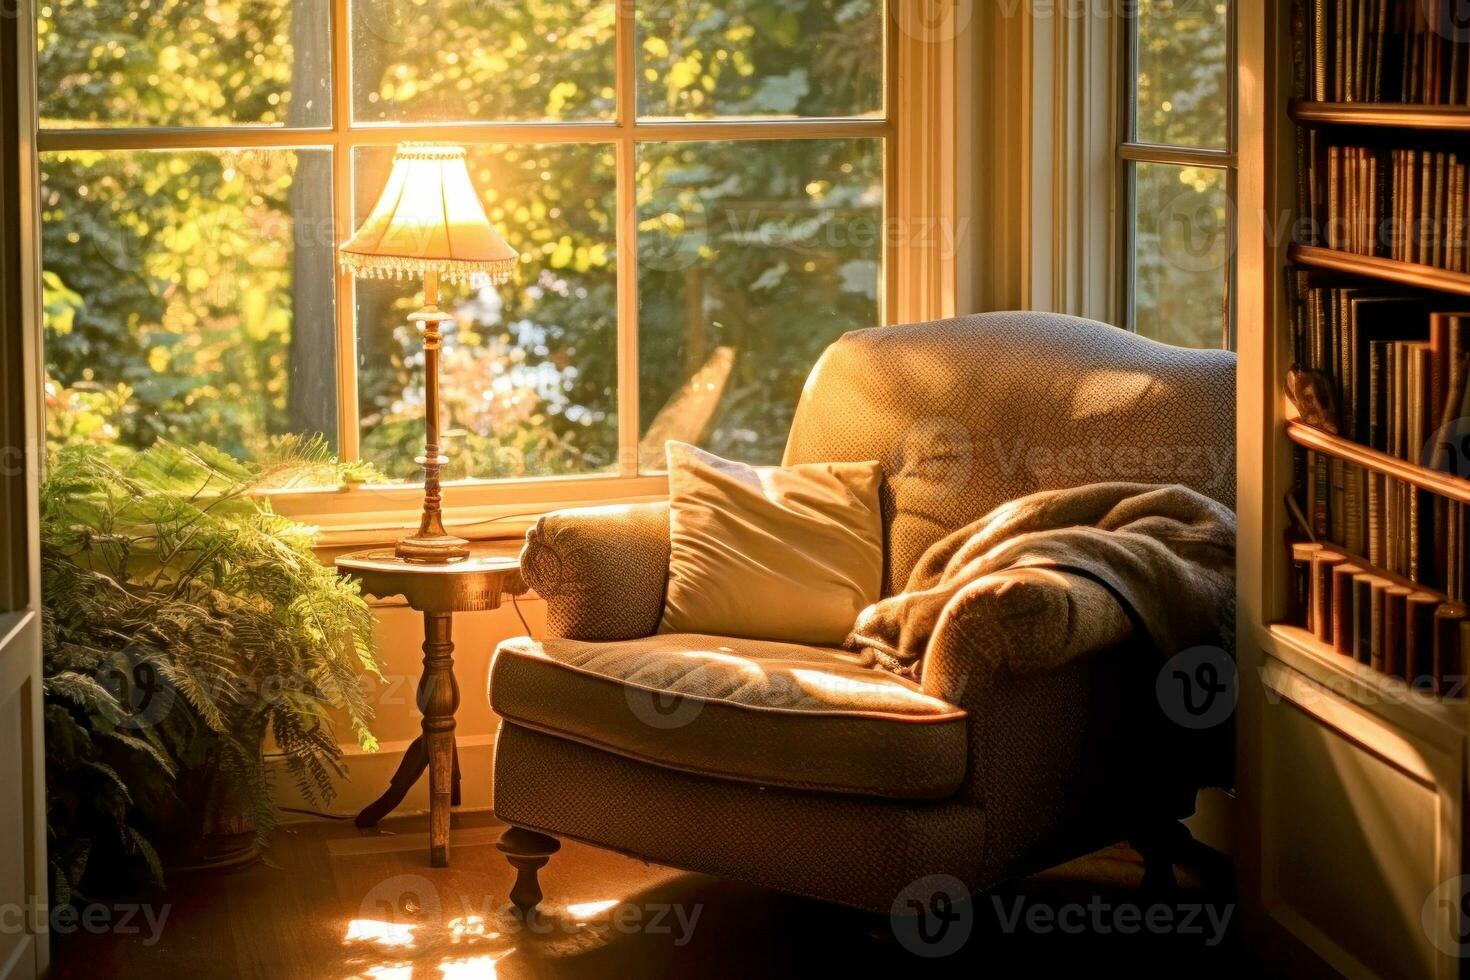 een ontspannende in een comfortabel fauteuil door een venster, met zacht zonlicht streaming in. foto